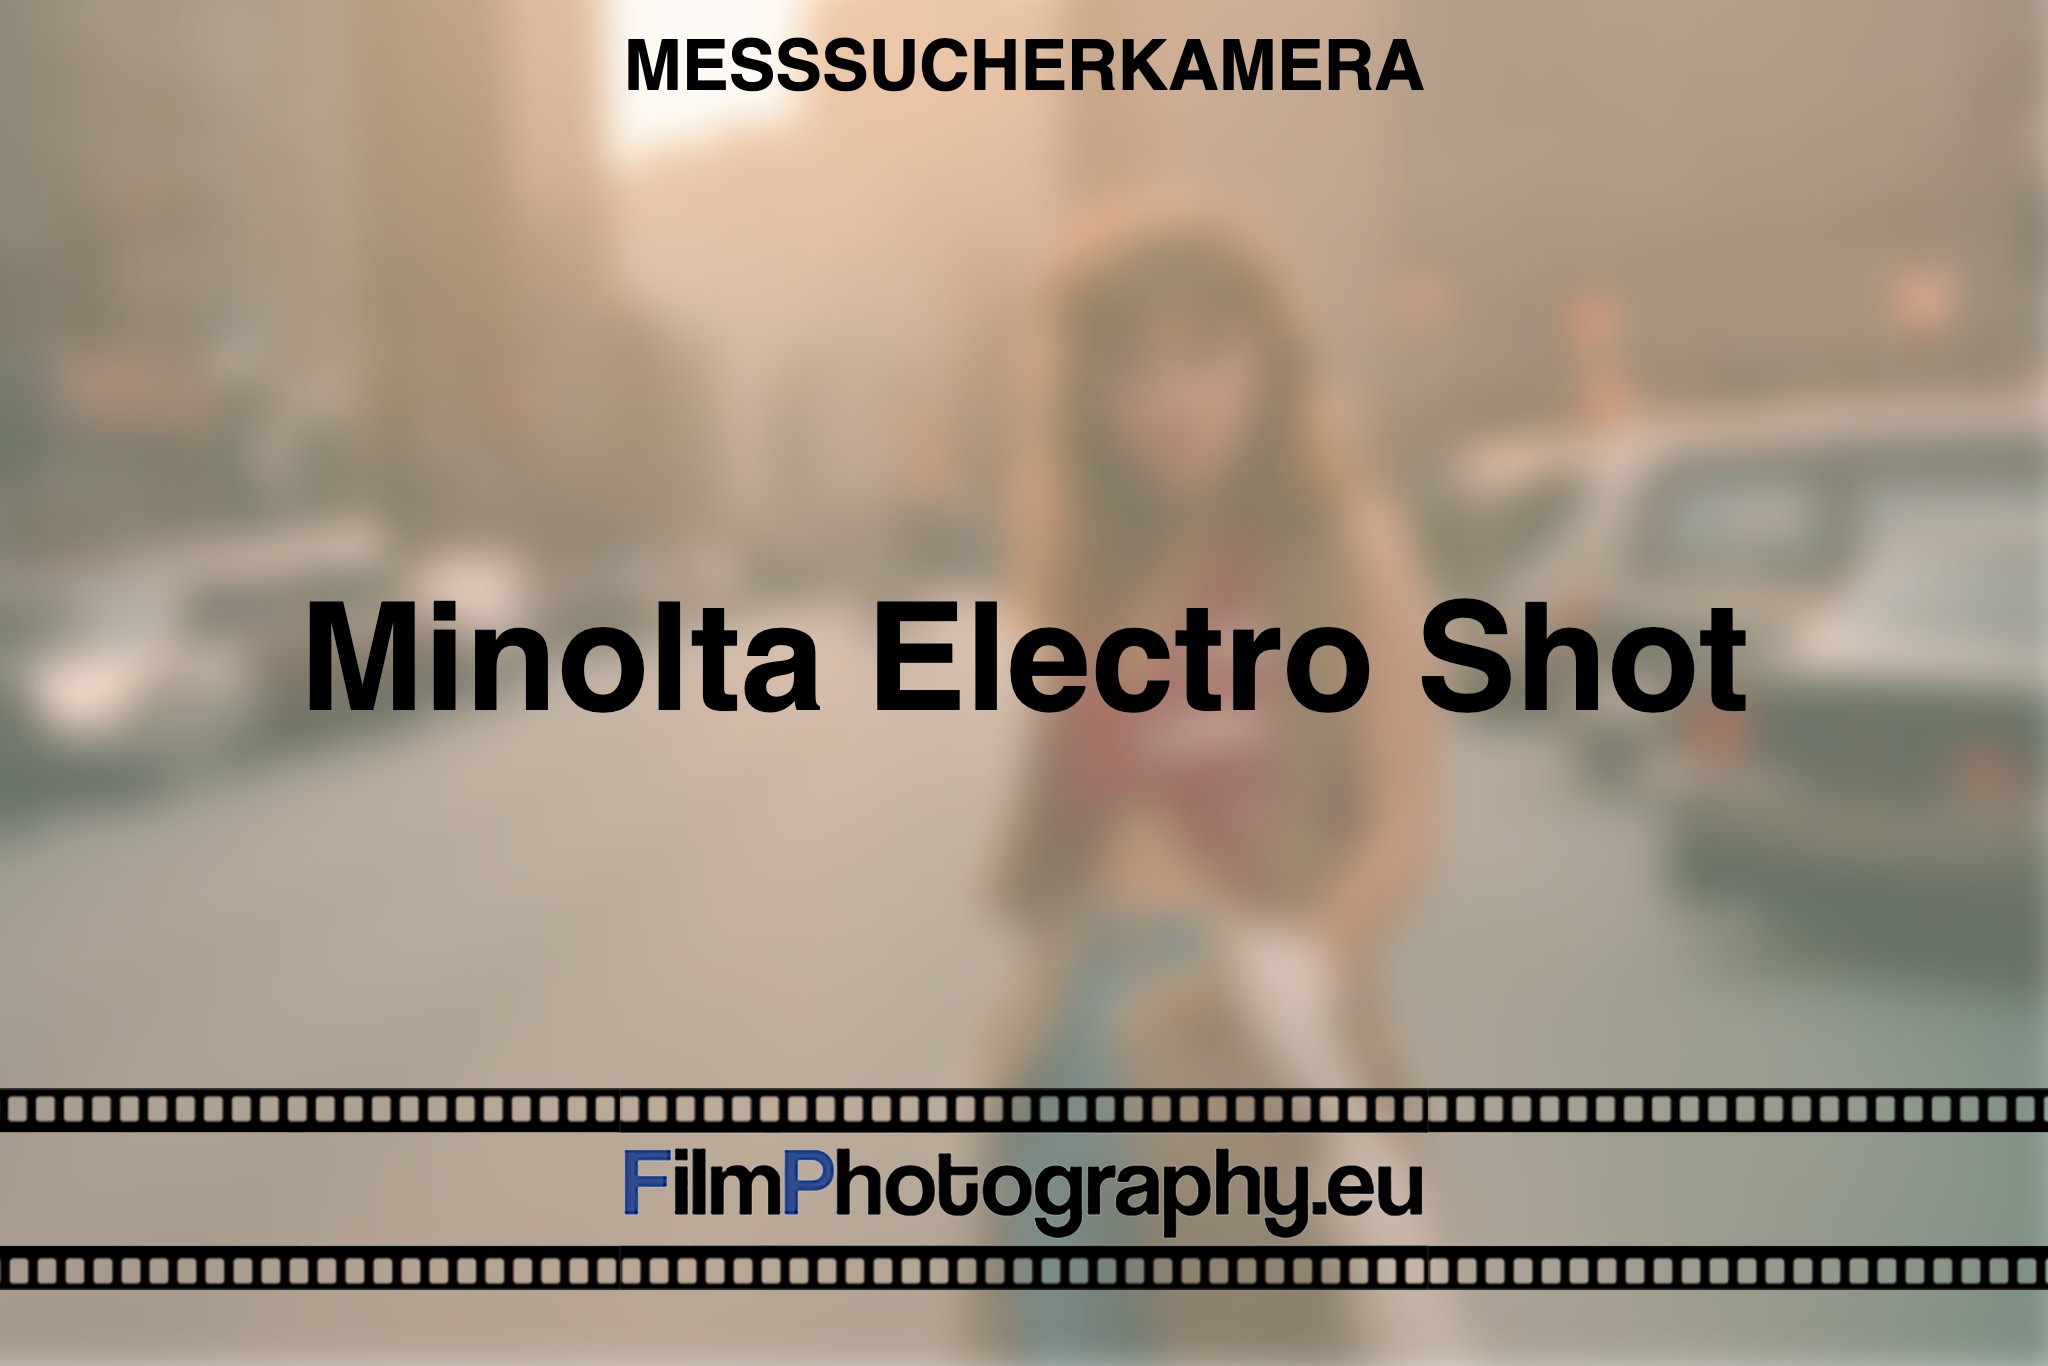 minolta-electro-shot-messsucherkamera-bnv